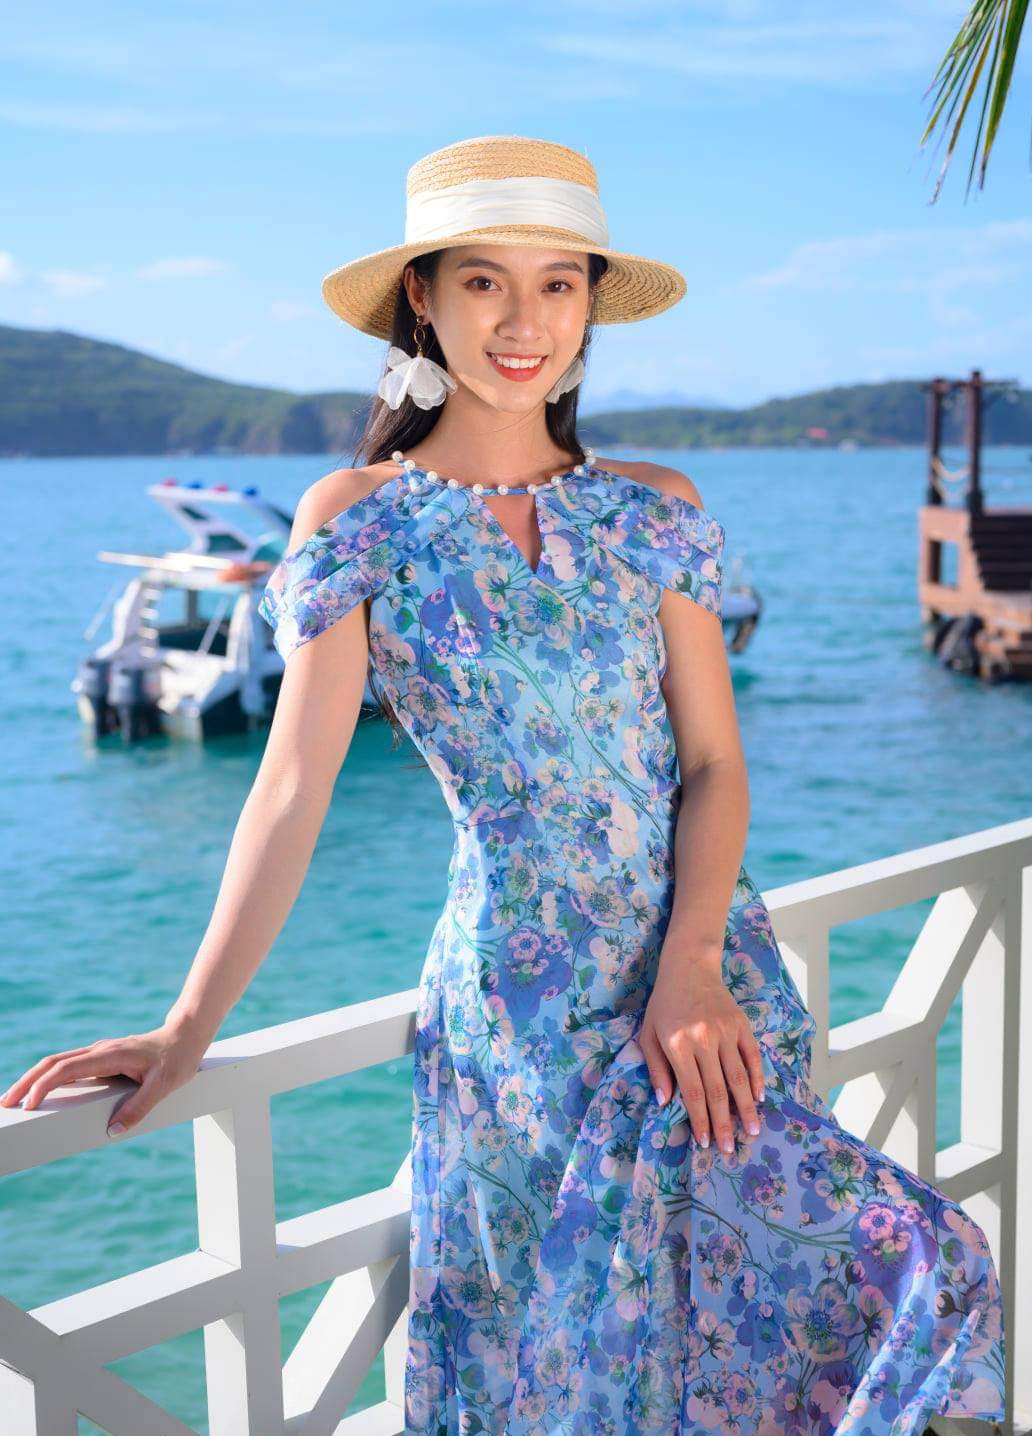 Tổng hợp 6 Shop Bán Váy Đầm Maxi Đi Biển Đẹp HẾT SẢY giá dưới 500k